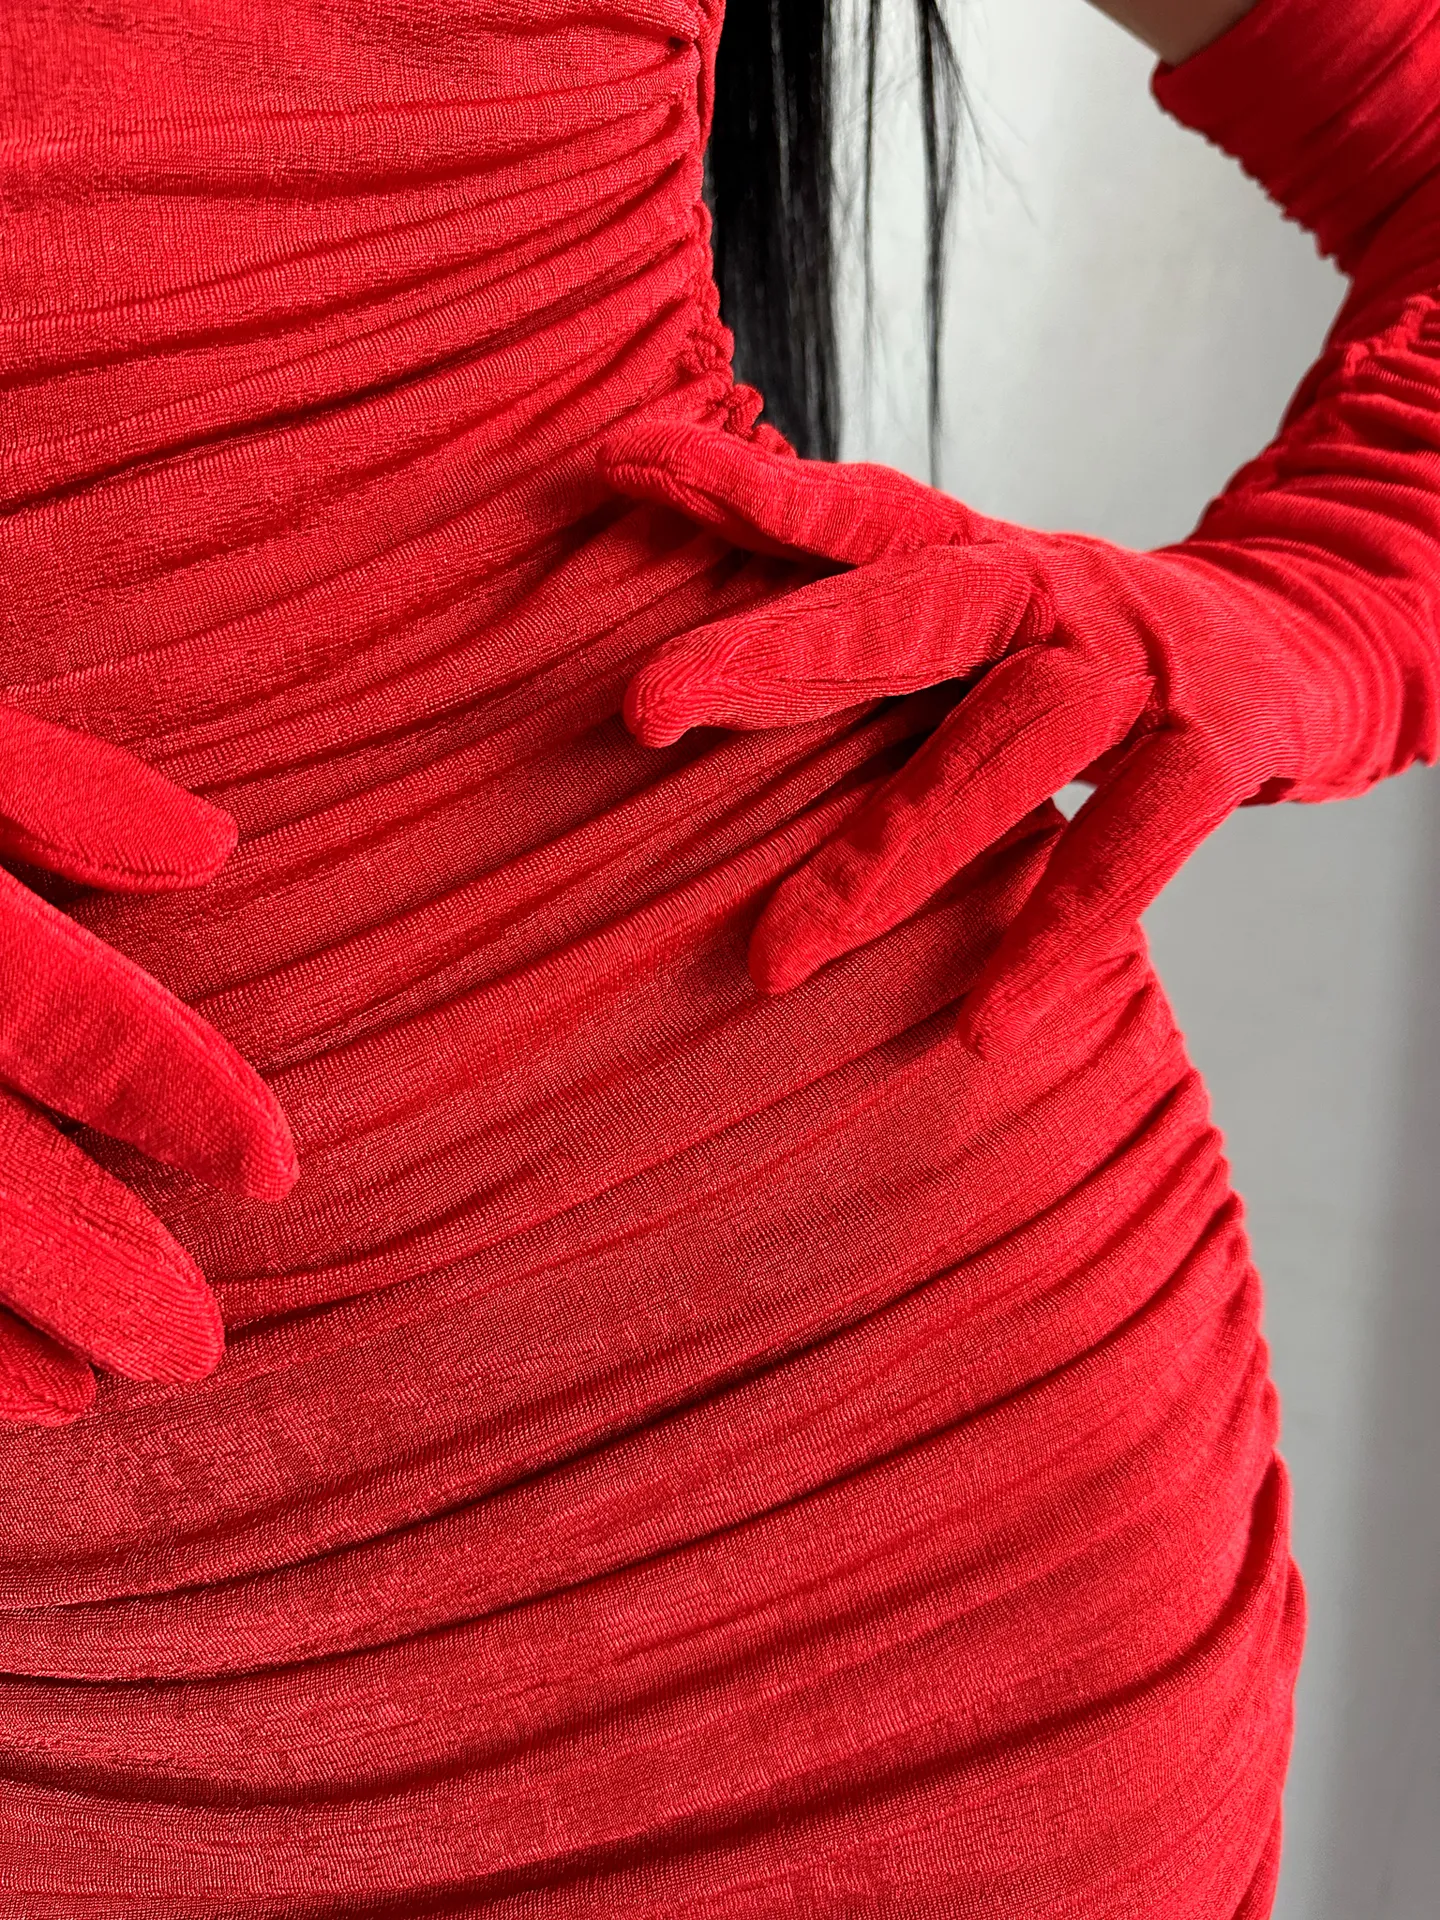 Платье Kikiriki 57859 удлиненное со сборкой по бокам, разрезом сзади и перчатками в комплекте оптом